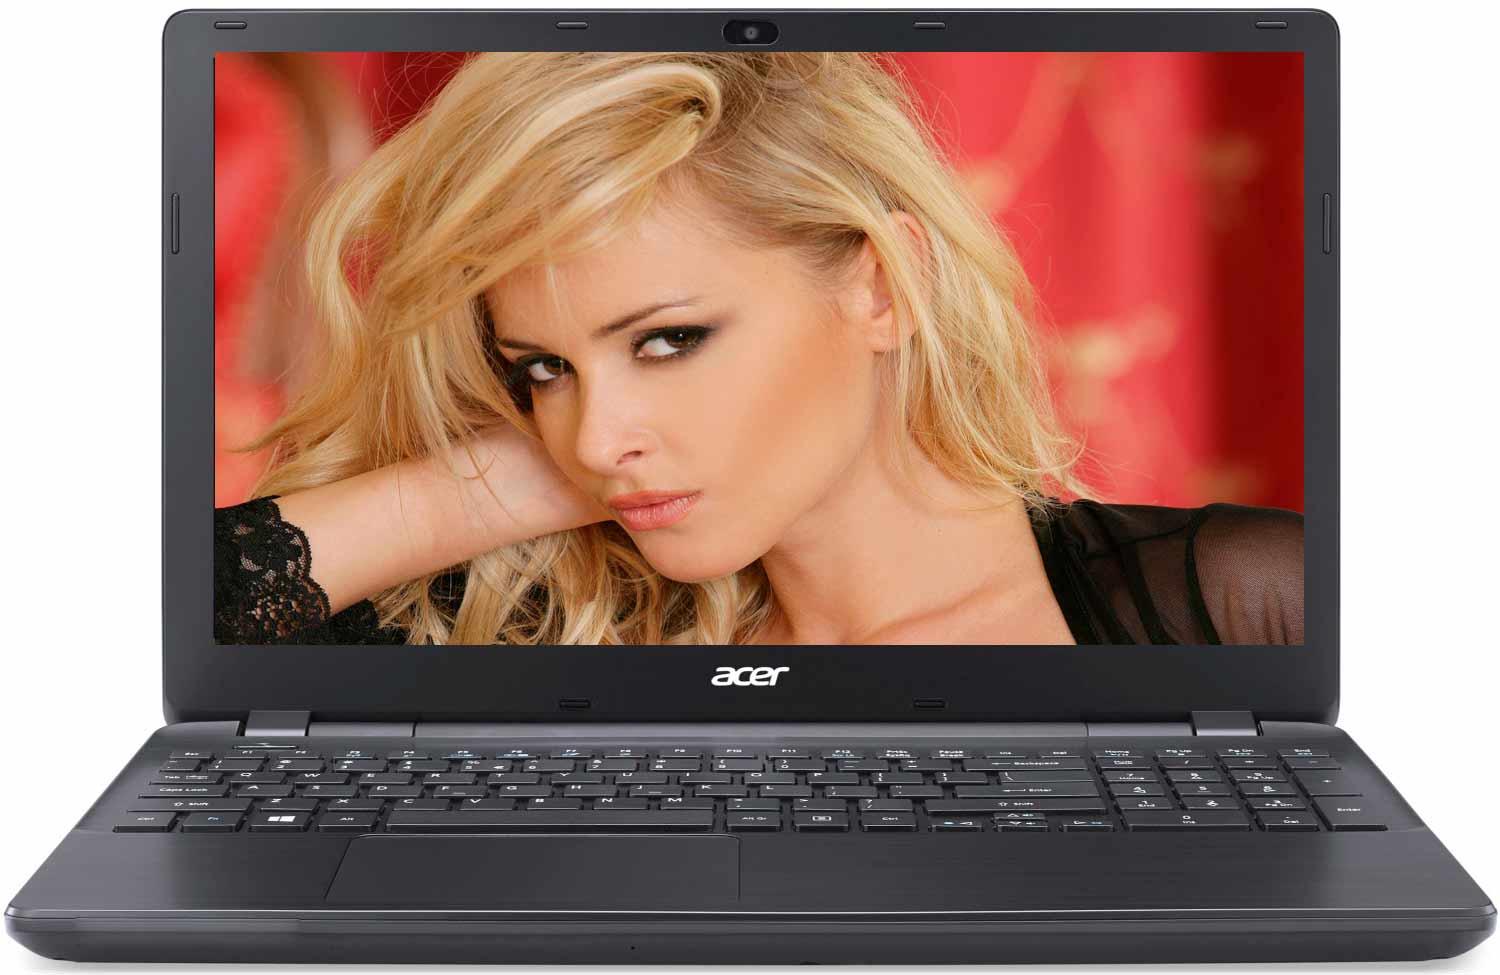   Acer Extensa EX2519-P79W (NX.EFAER.025)  1